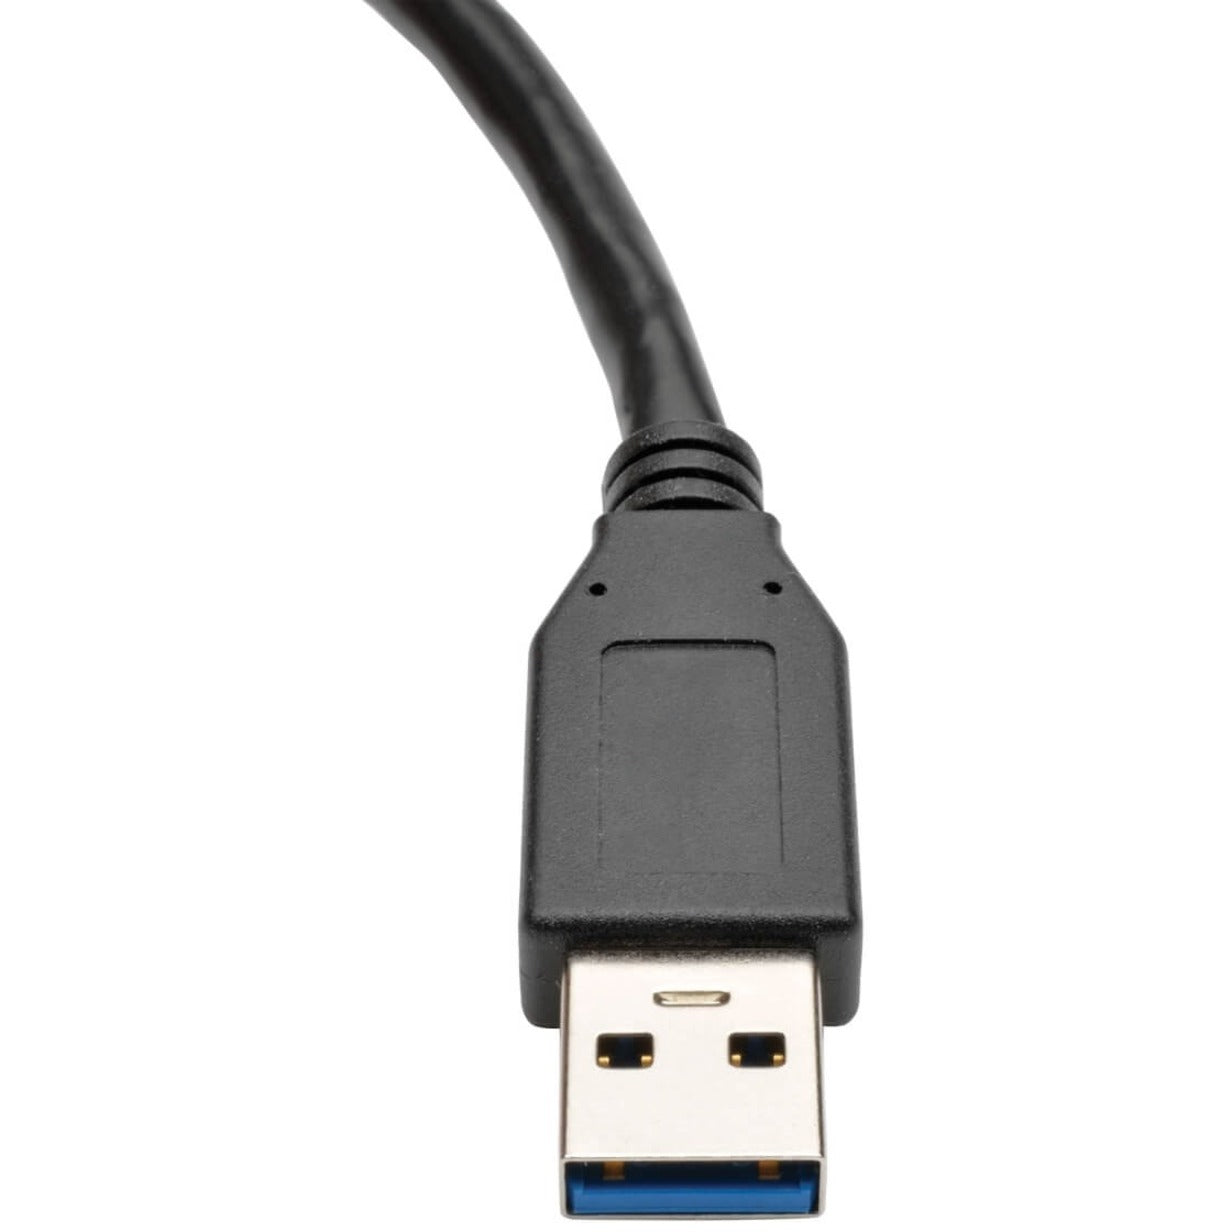 特拉伯利特 U324-06N-BK USB 3.0 超速 Type-A 延长线（男/女），黑色，6 英寸。 特拉伯利特